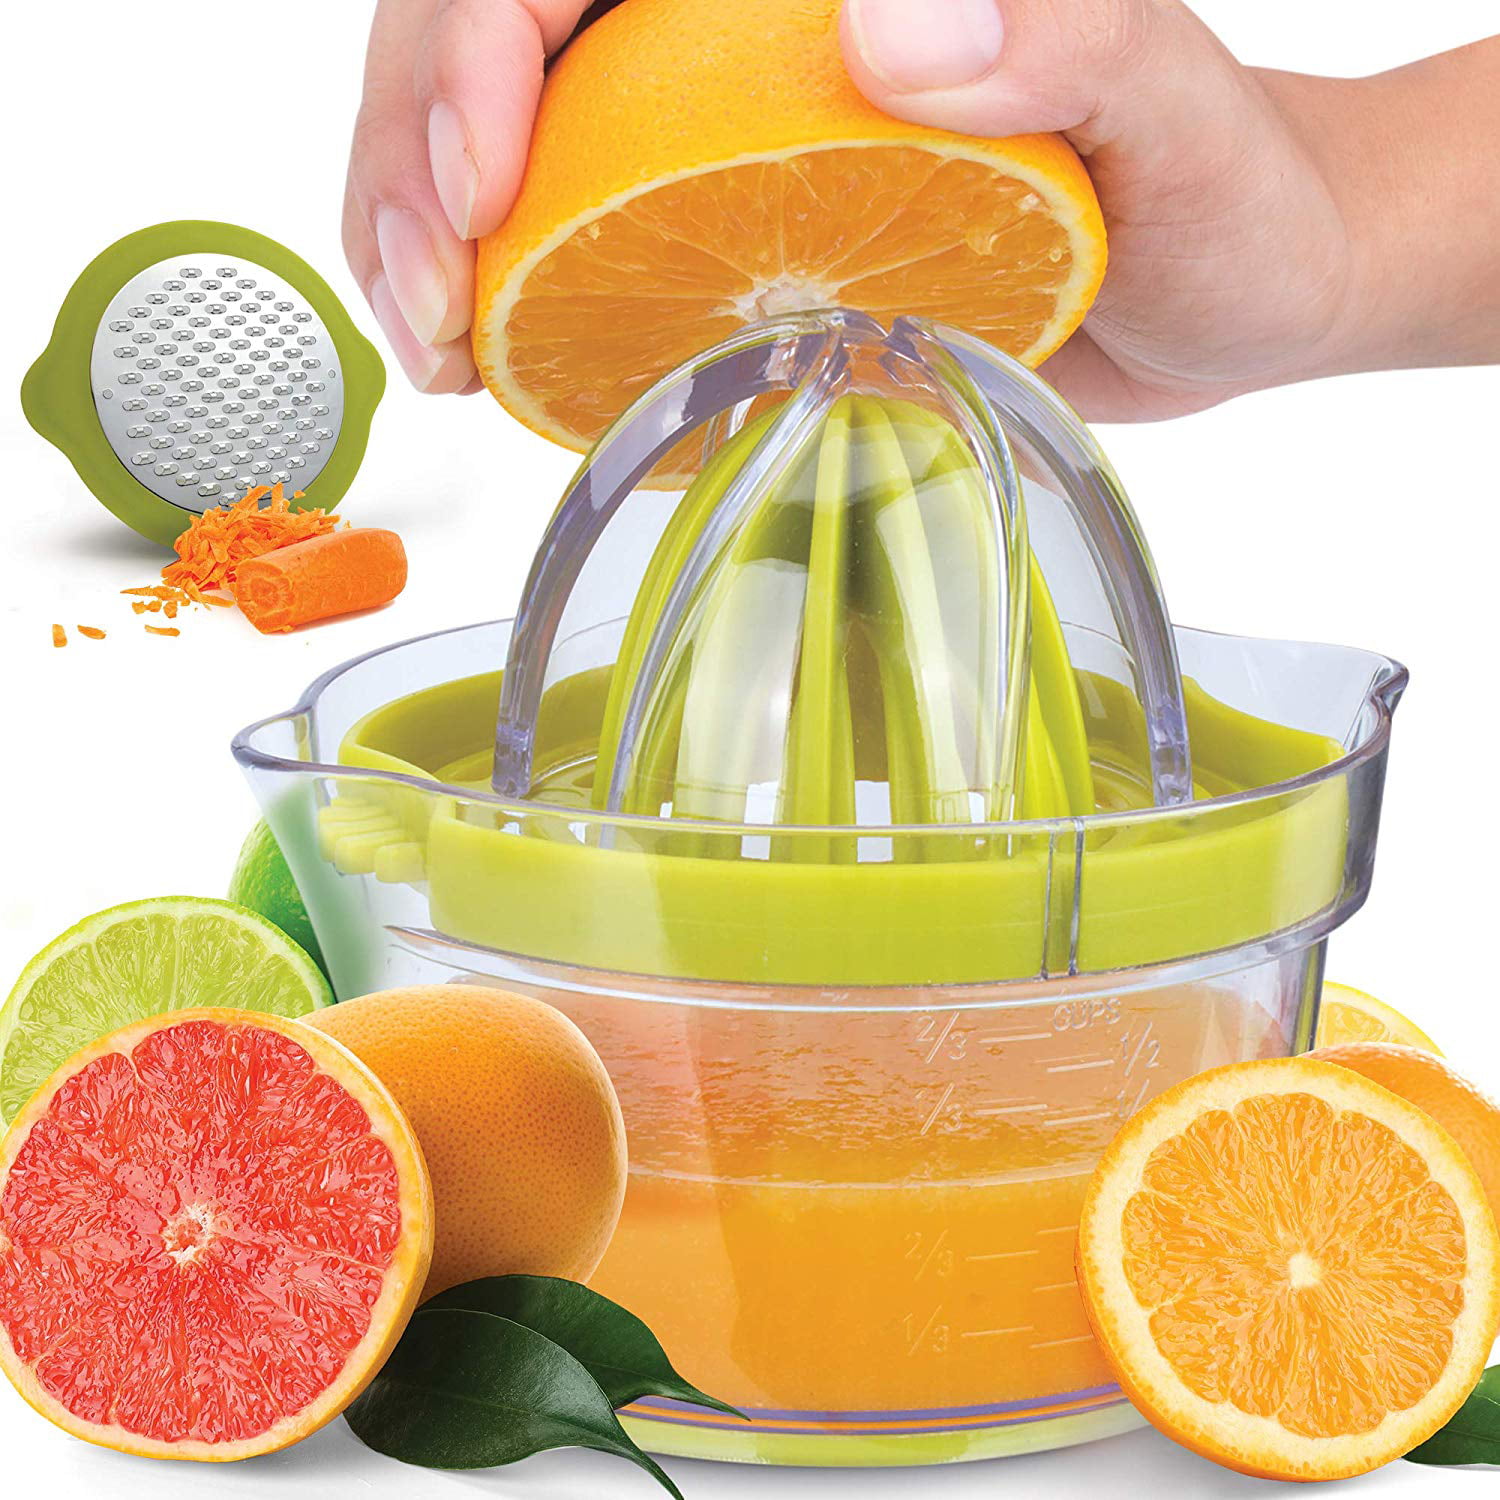 Lemon Orange Citrus Juicer, Manual Hand Juicer with Built-In Strainer